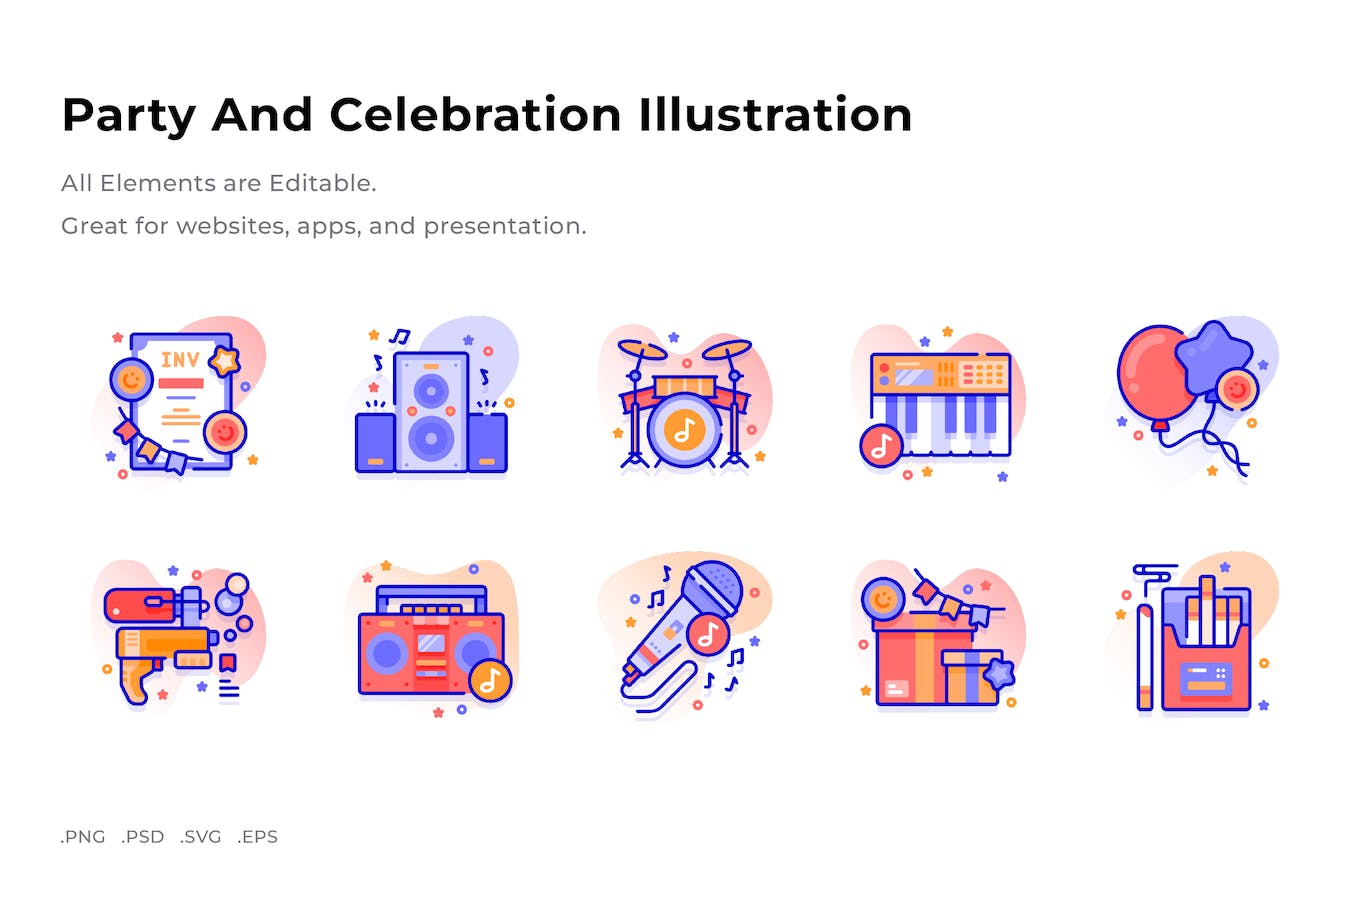 派对和庆典插画彩色图标素材 (PNG,PSD,SVG)